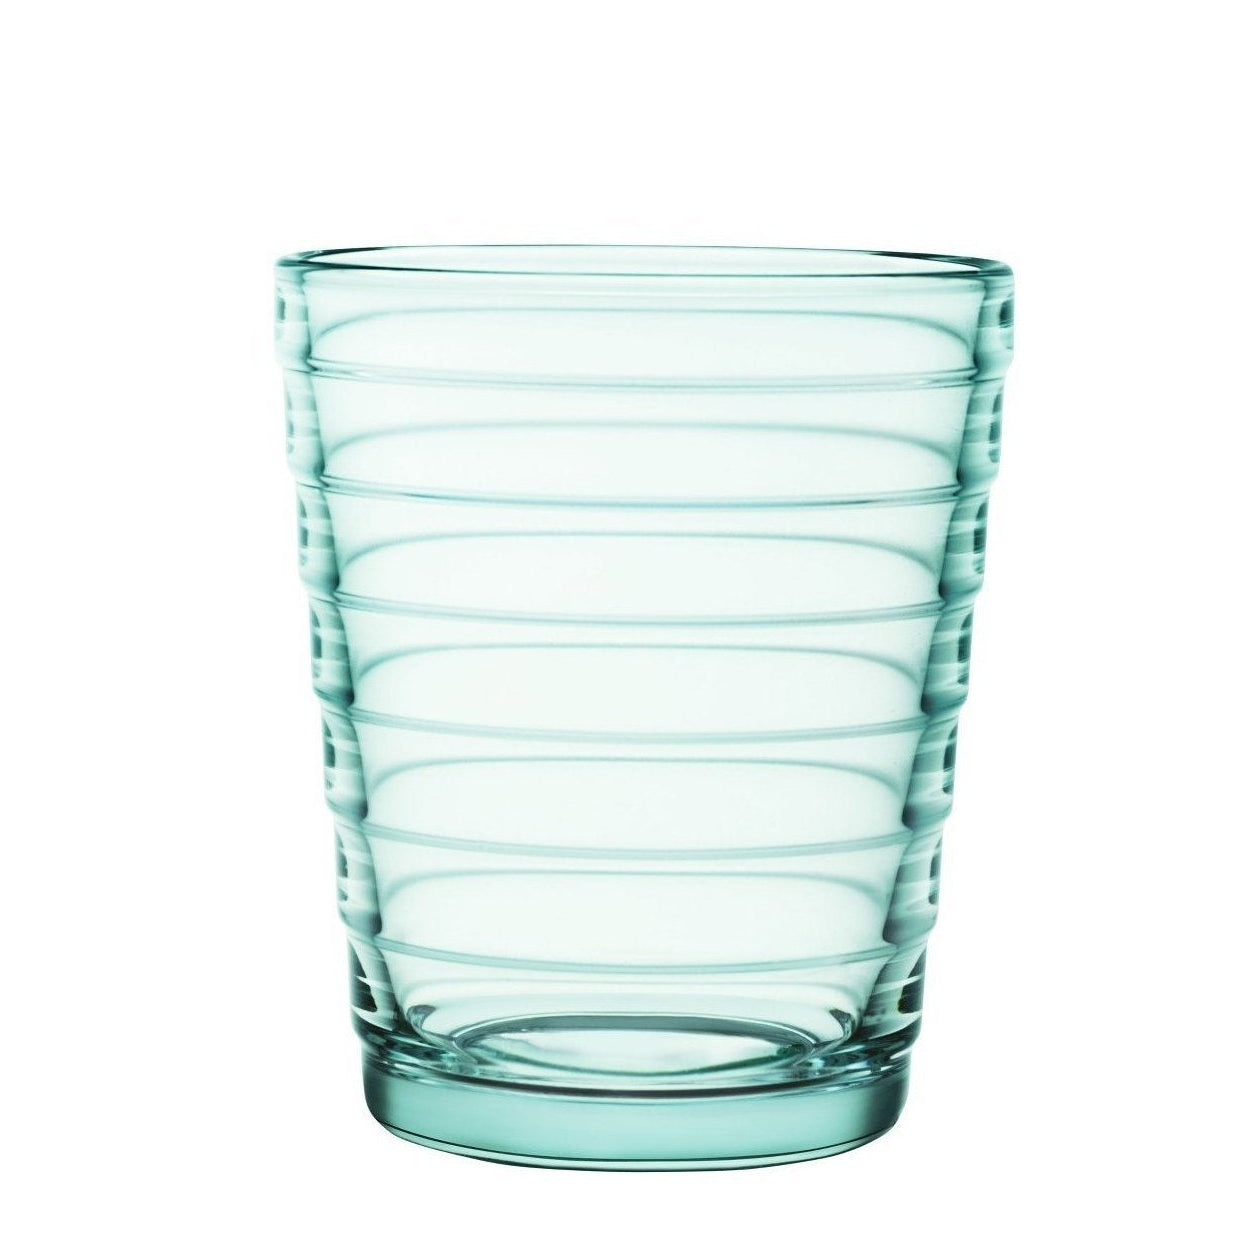 Iittala Aino Aalto Gläser Wasser Grün 2pcs, 22cl